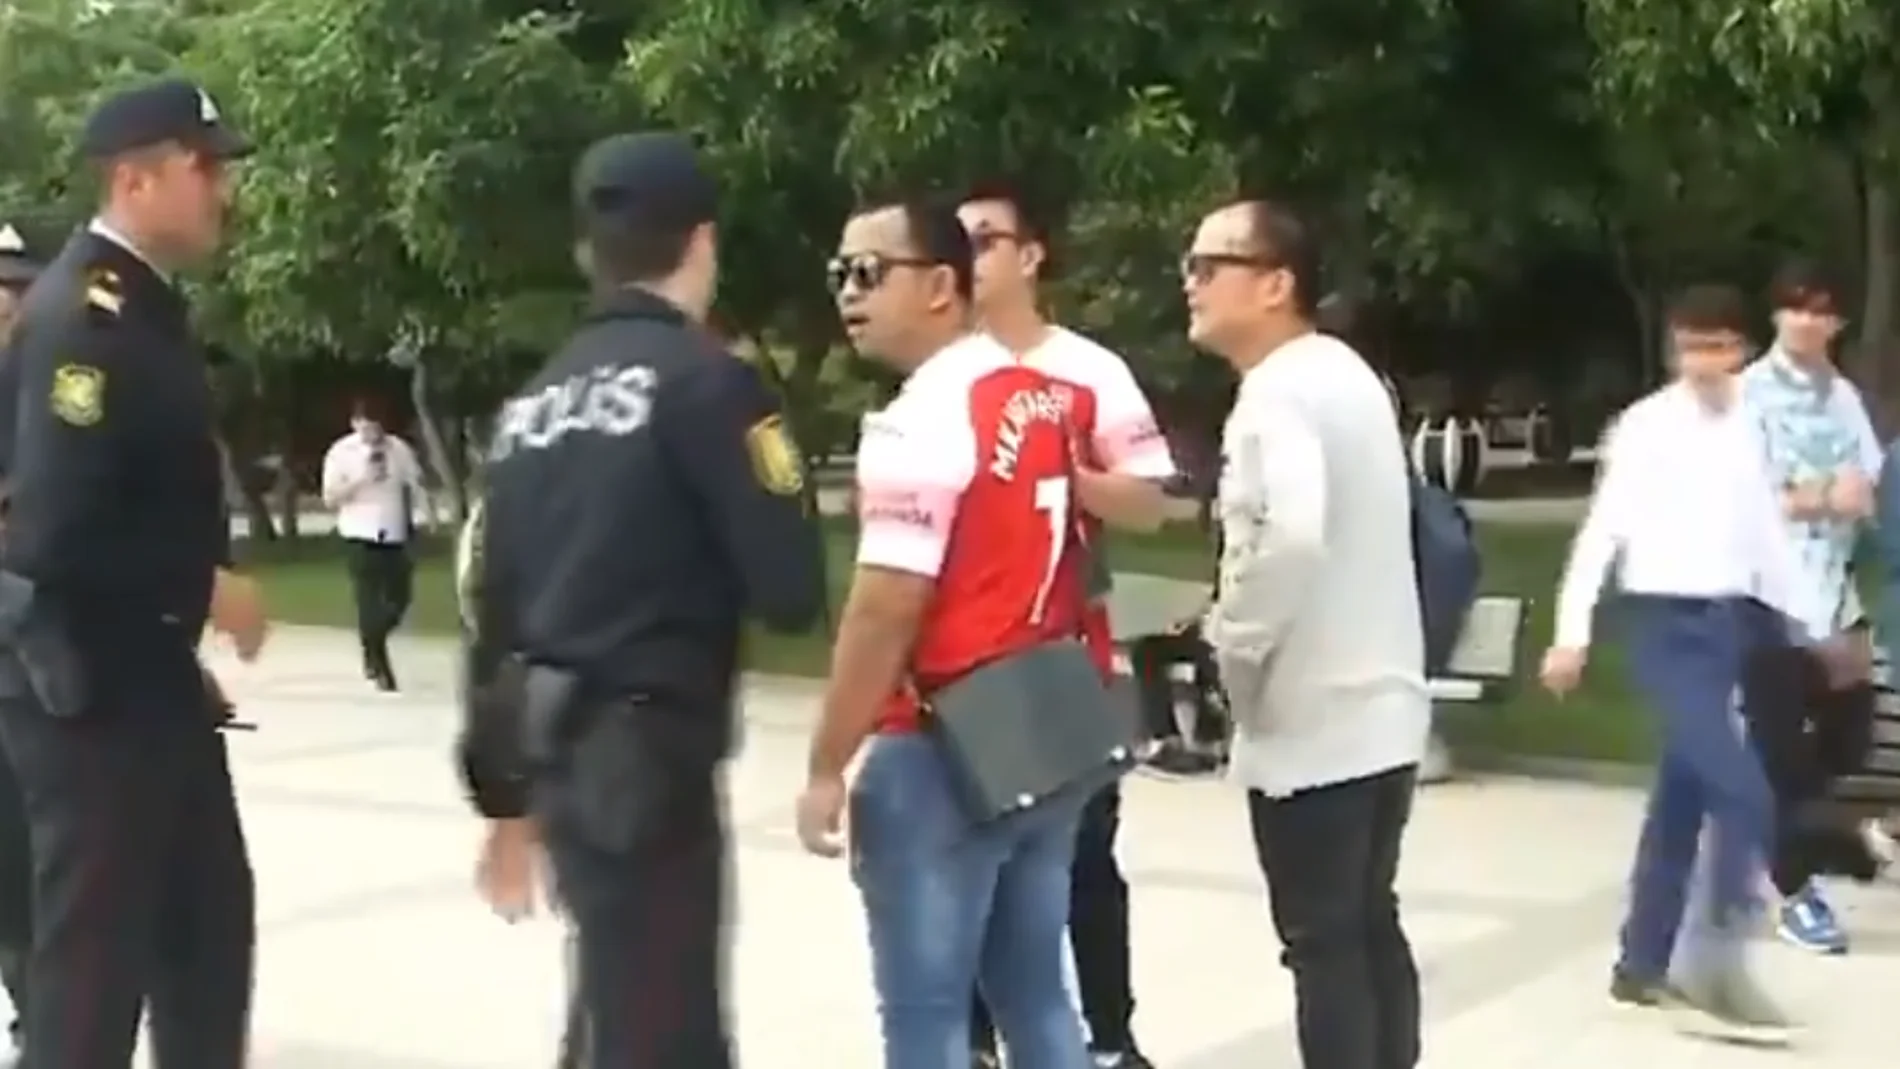 La Policía de Bakú identifica a los aficionados del Arsenal con la camiseta de Mkhitaryan